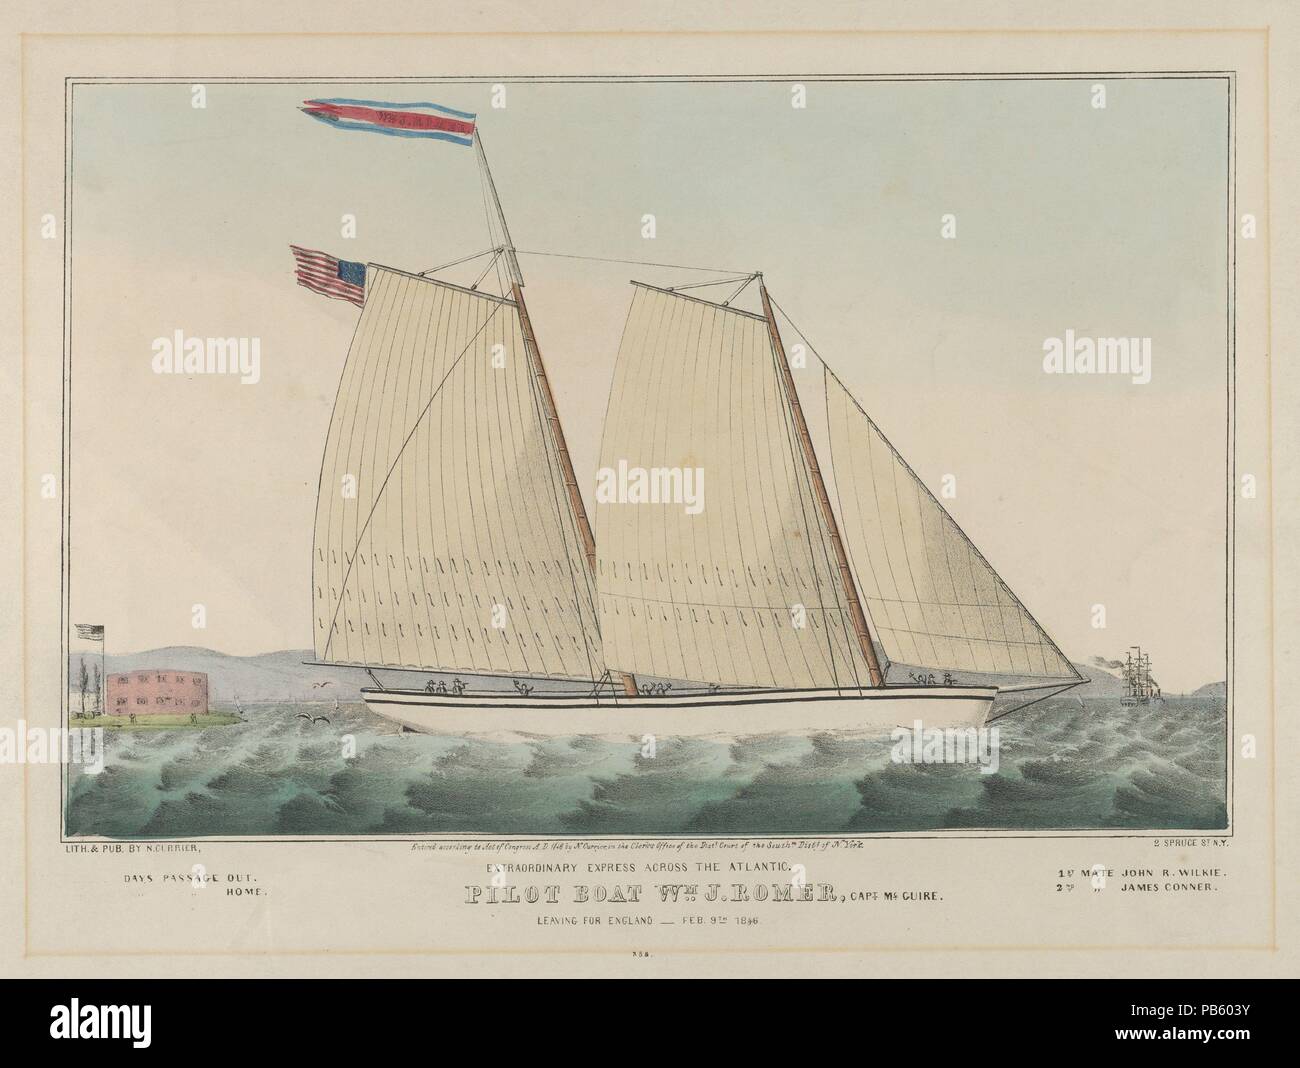 Straordinario Express attraverso l'Atlantico - barca pilota William J. Romer, Capitano McGuire, lasciando per Inghilterra febbraio 9th, 1846. Dimensioni: Immagine: 8 1/4 x 12 11/16 in. (21 x 32,2 cm) foglio: 13 7/16 x 18 1/16 in. (34,1 x 45,9 cm). Litografo: litografato e pubblicato da Nathaniel Currier (American, Roxbury, Massachusetts 1813-1888 New York). Data: 1846. Un due-masted sailing vessel viaggi a destra attraverso onde ruvida. Un'altra nave può essere visto in fondo a destra e un edificio sorge su un isola a sinistra. Una bandiera americana vola dalla nave's stern nonché da un polo Foto Stock